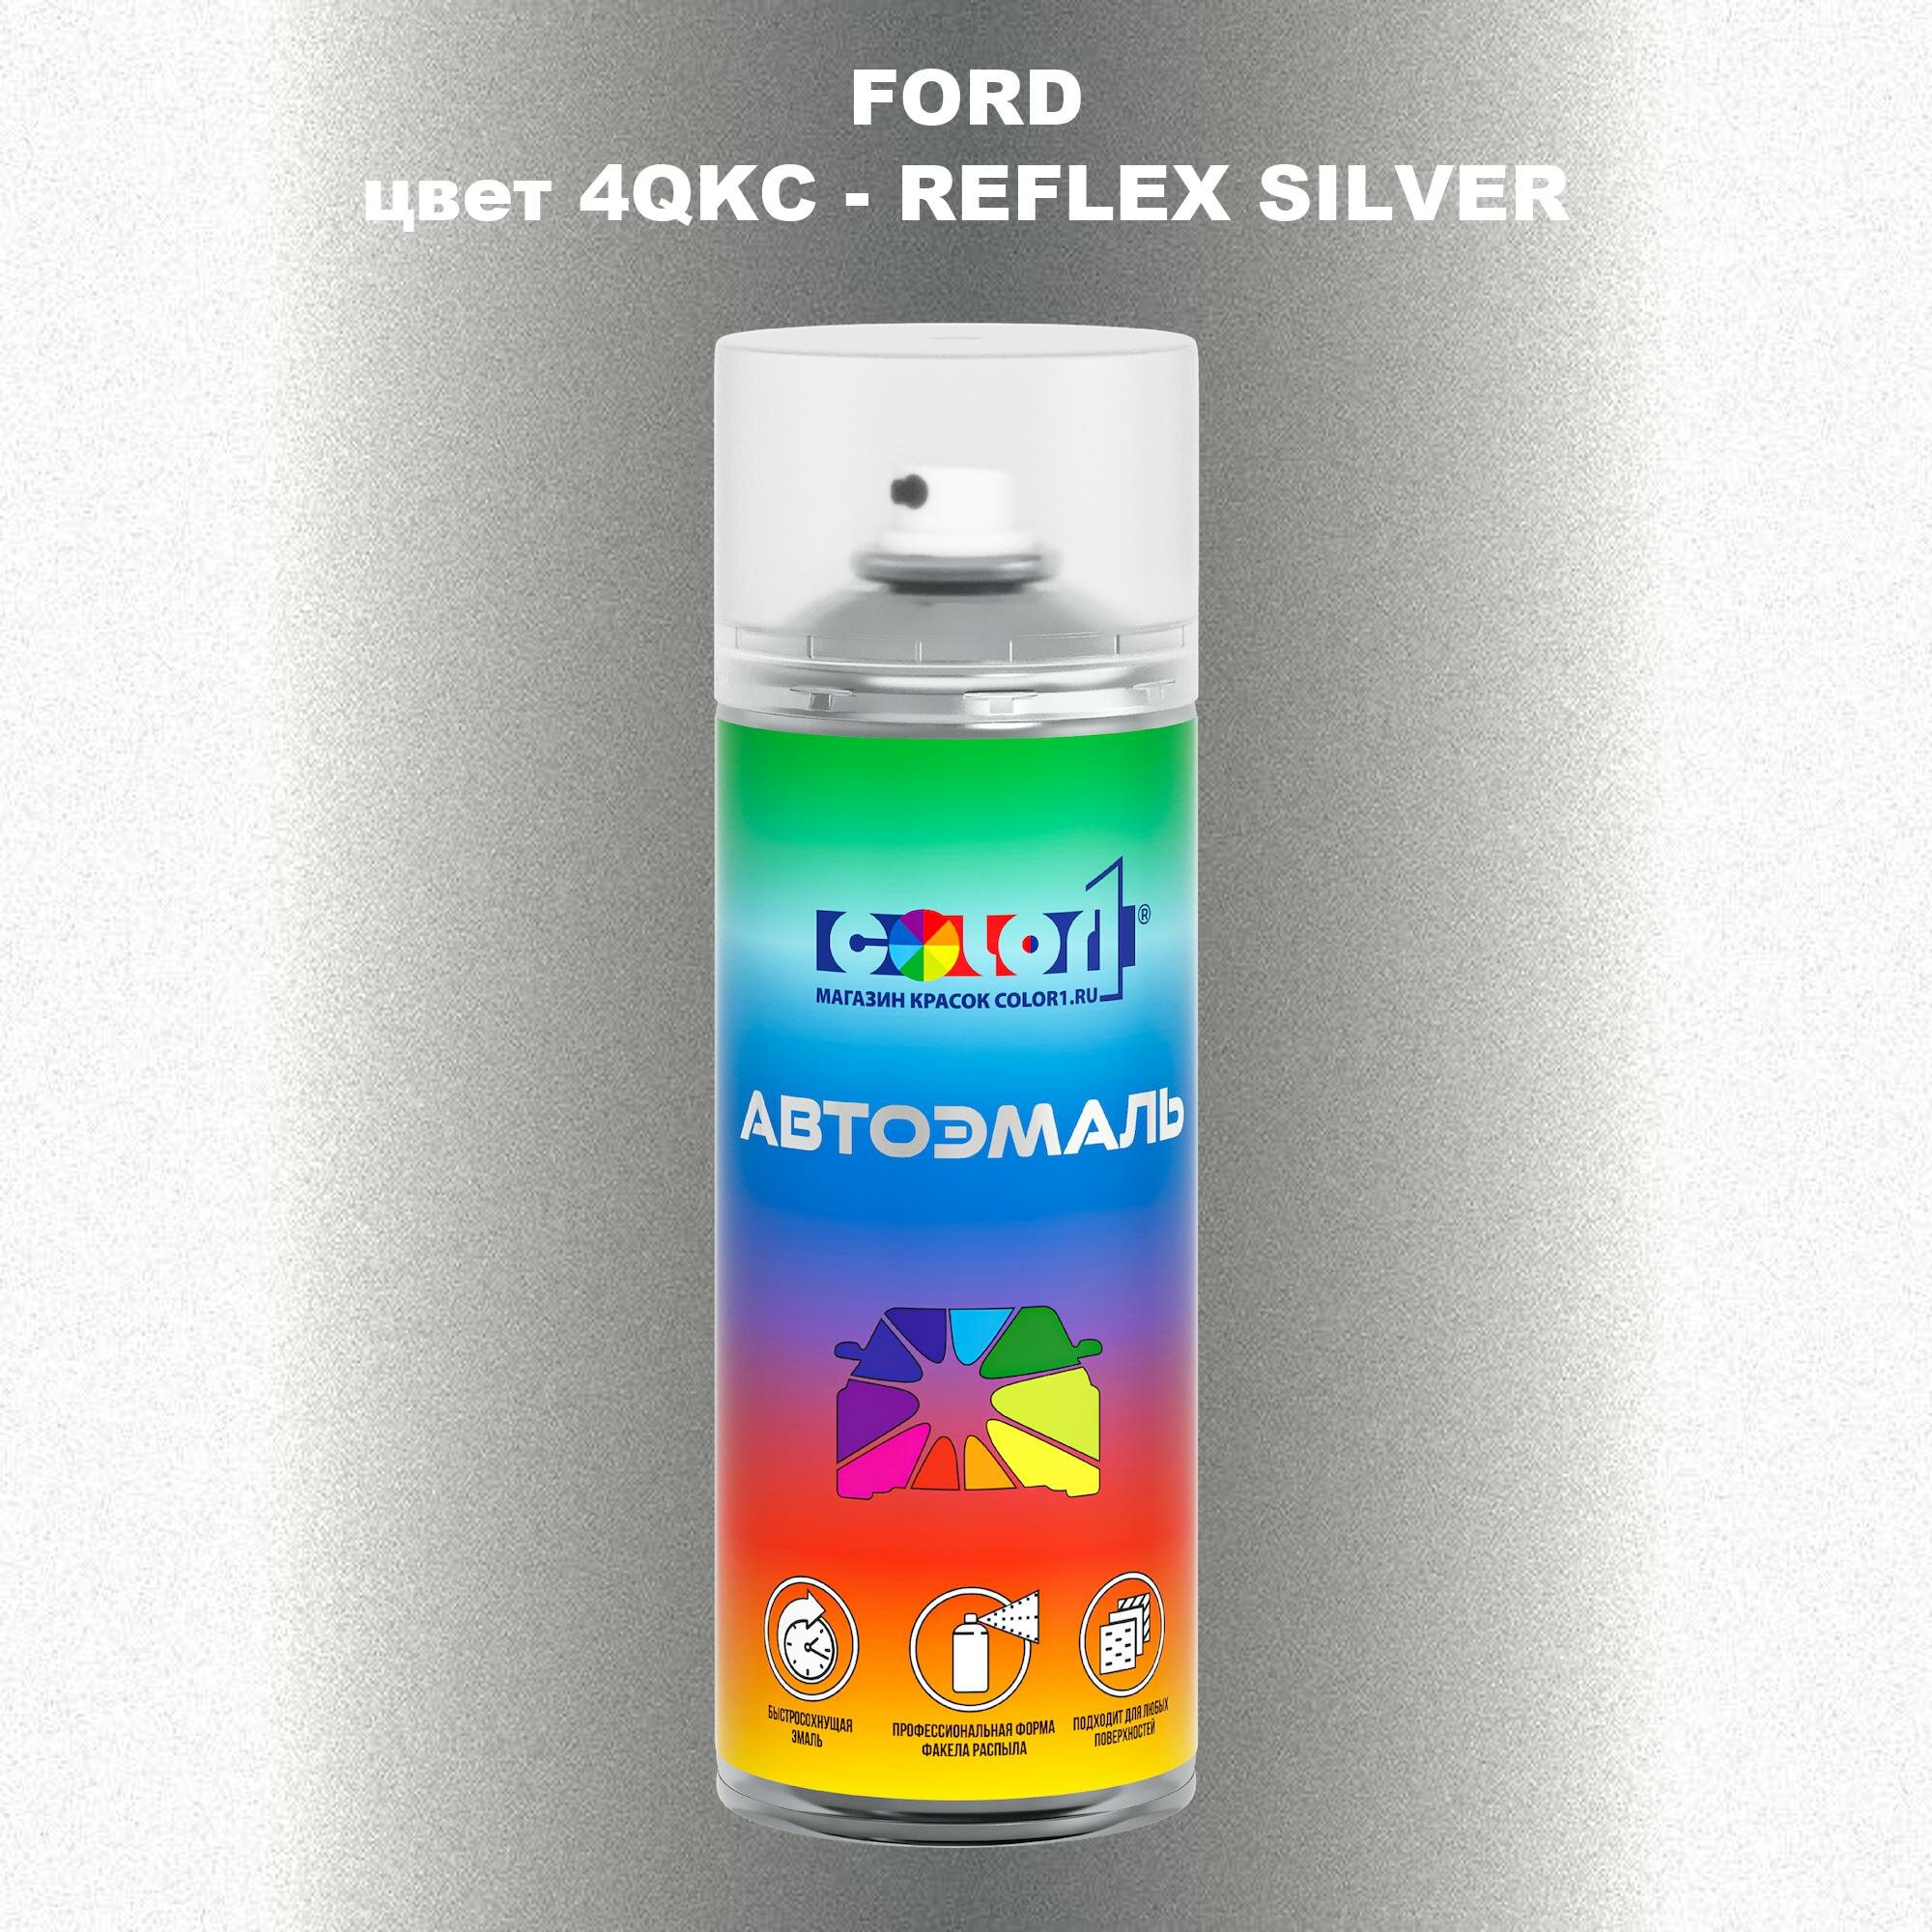 Аэрозольная краска COLOR1 для FORD, цвет 4QKC - REFLEX SILVER